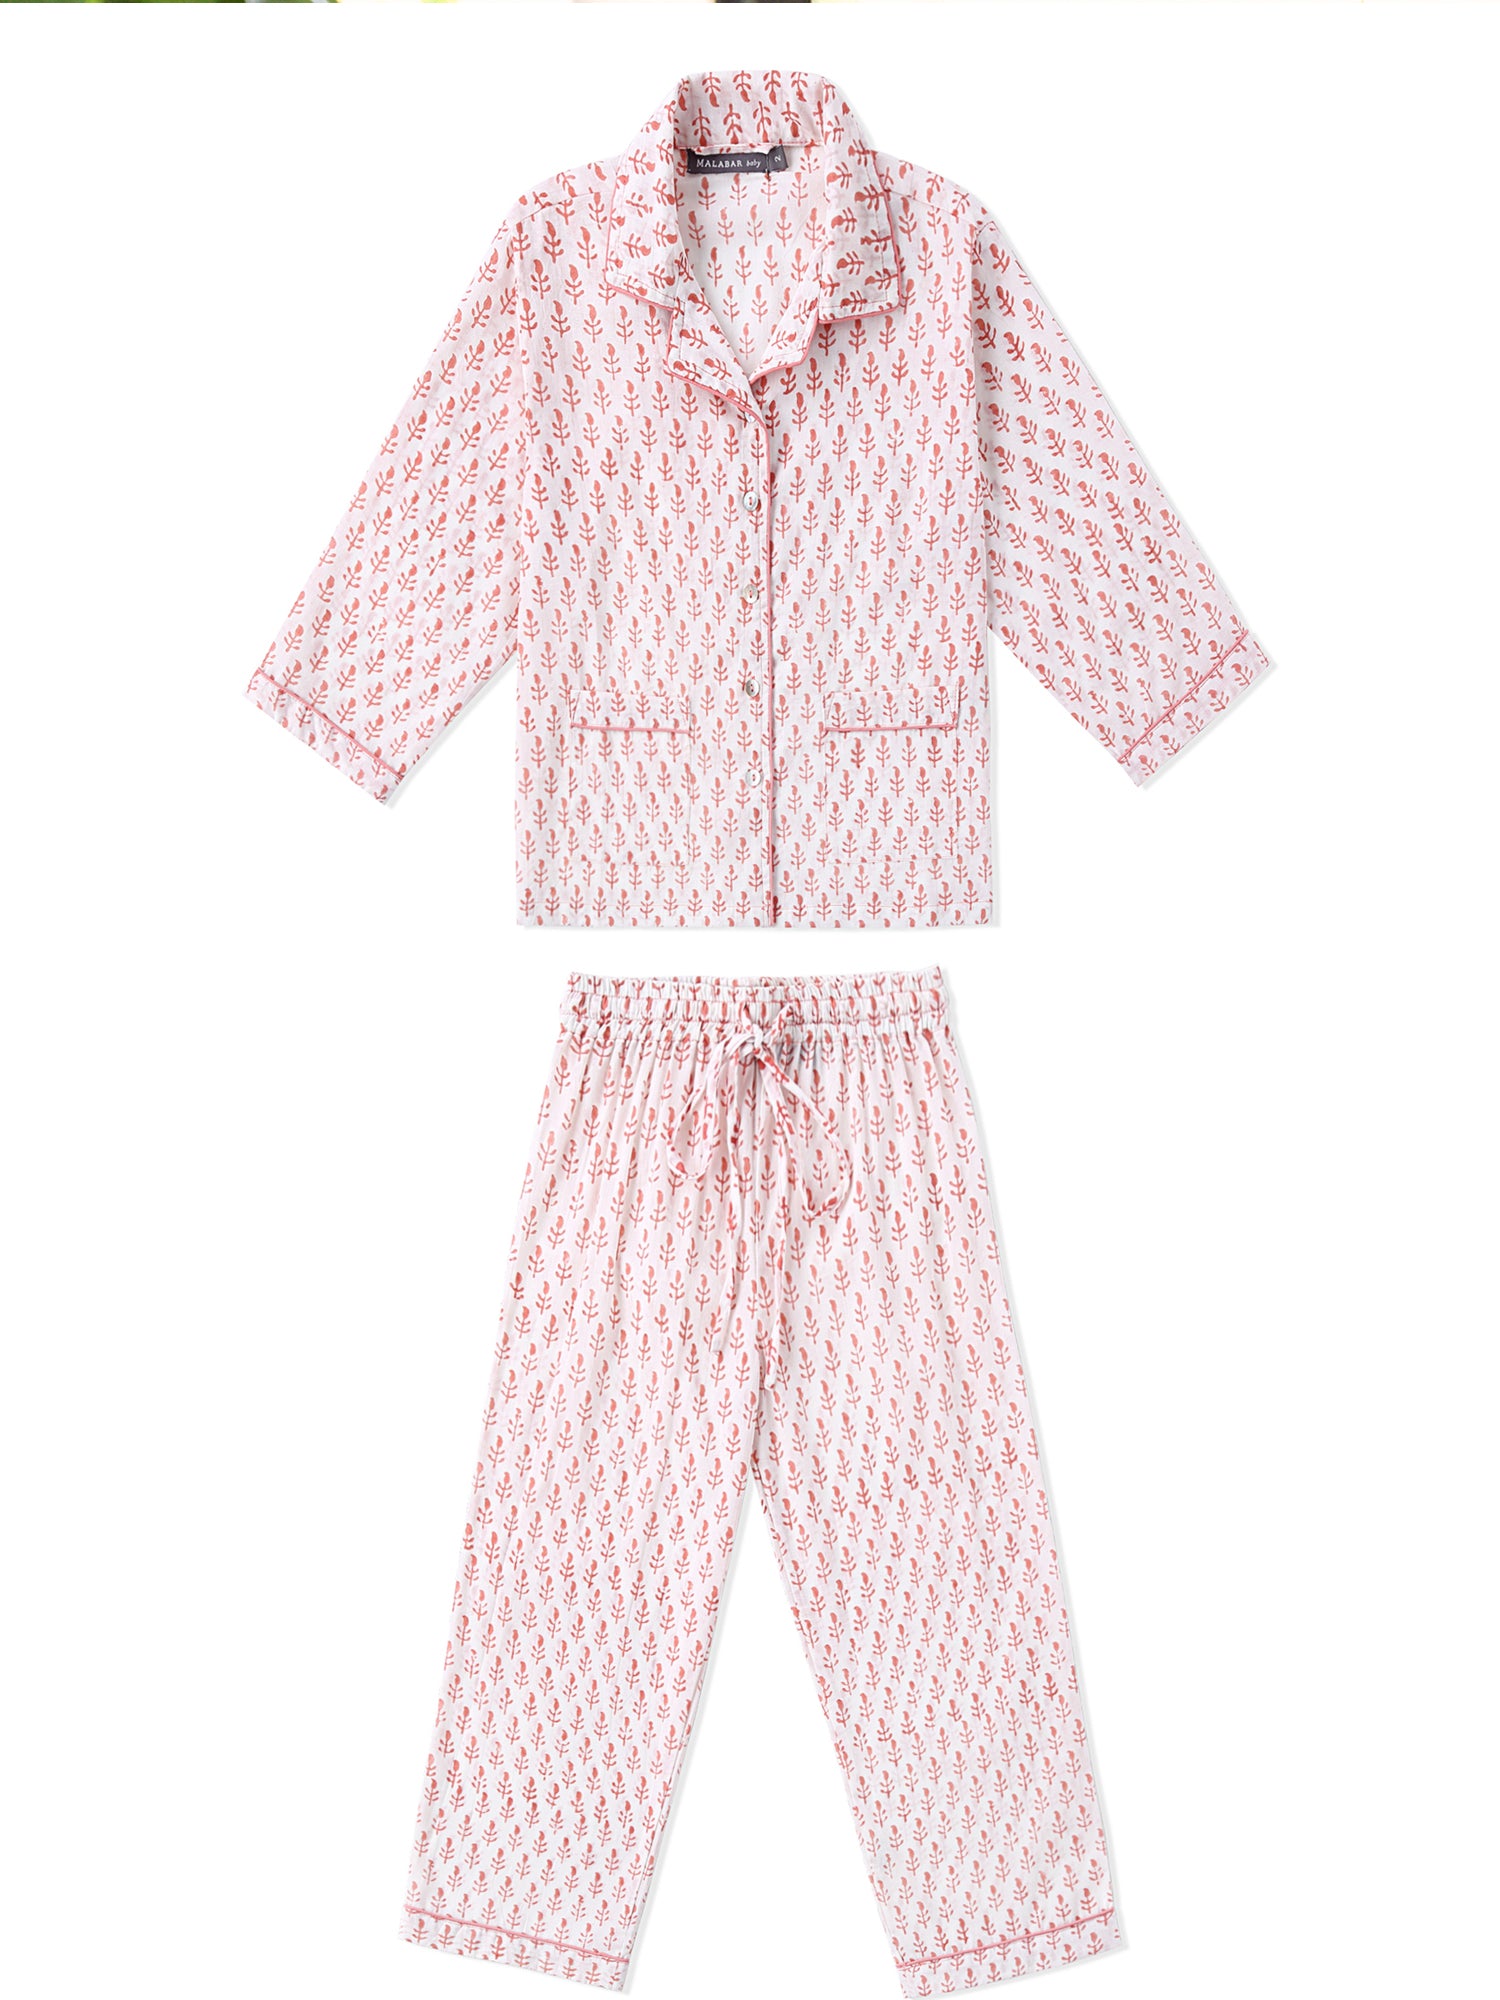 Twinning Set - Loungewear PJ Set - Pink City